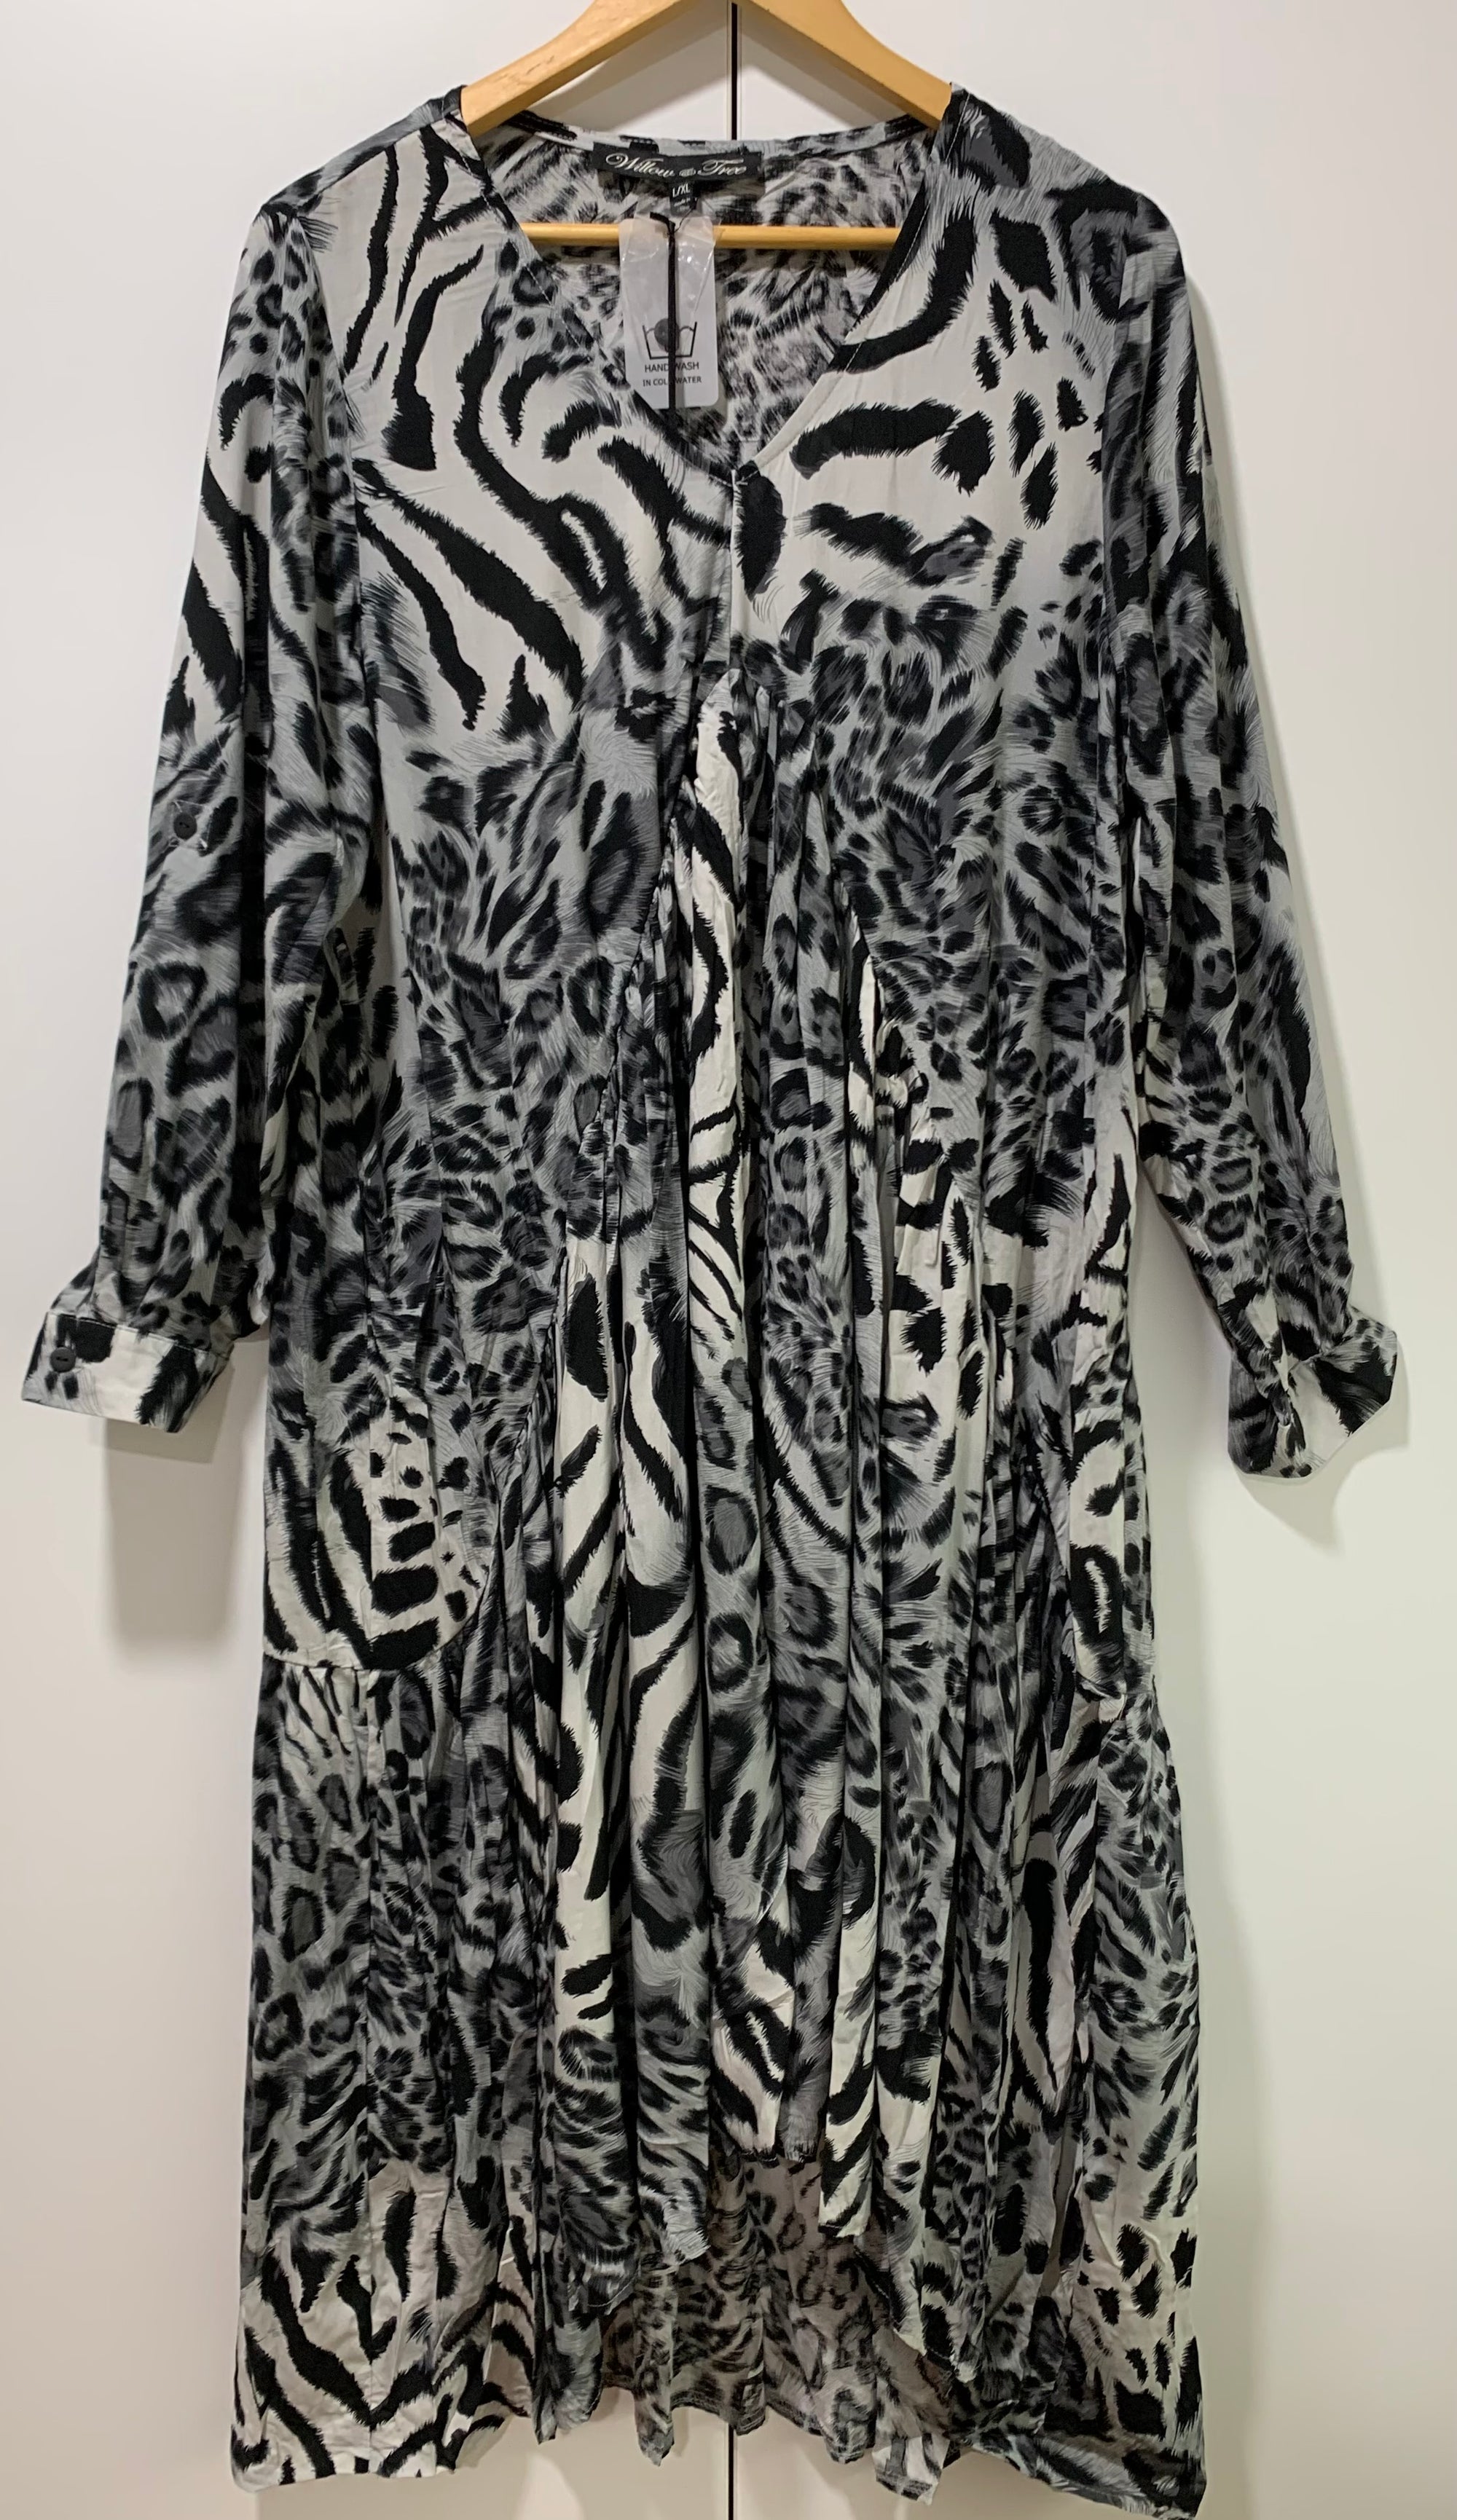 Animal Print Dress in Black & White Zebra Print Available in Sizes S/M & L/XL